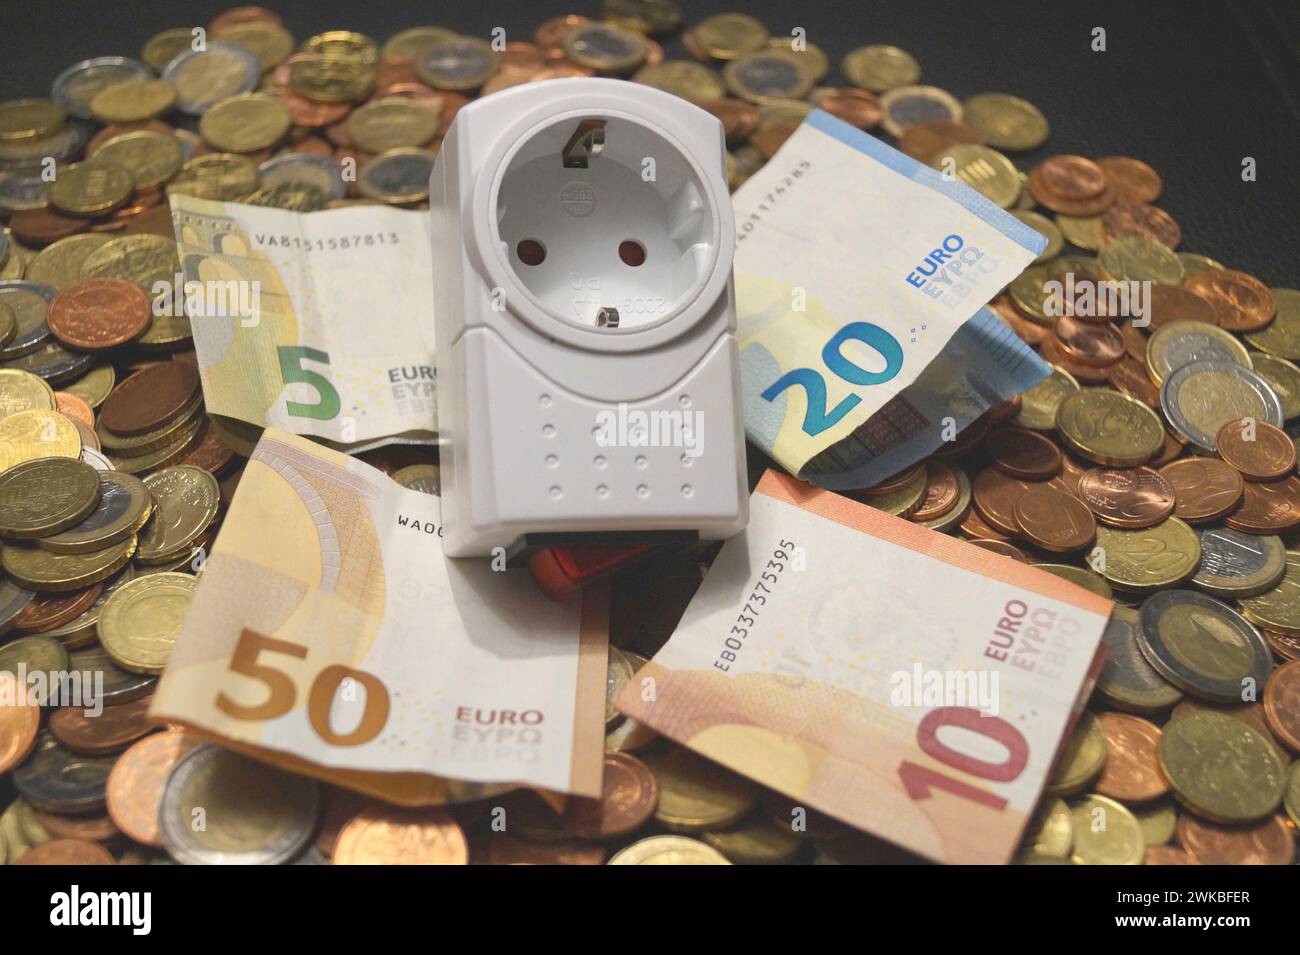 adattatore e denaro, immagine simbolica dei costi dell'elettricità Foto Stock